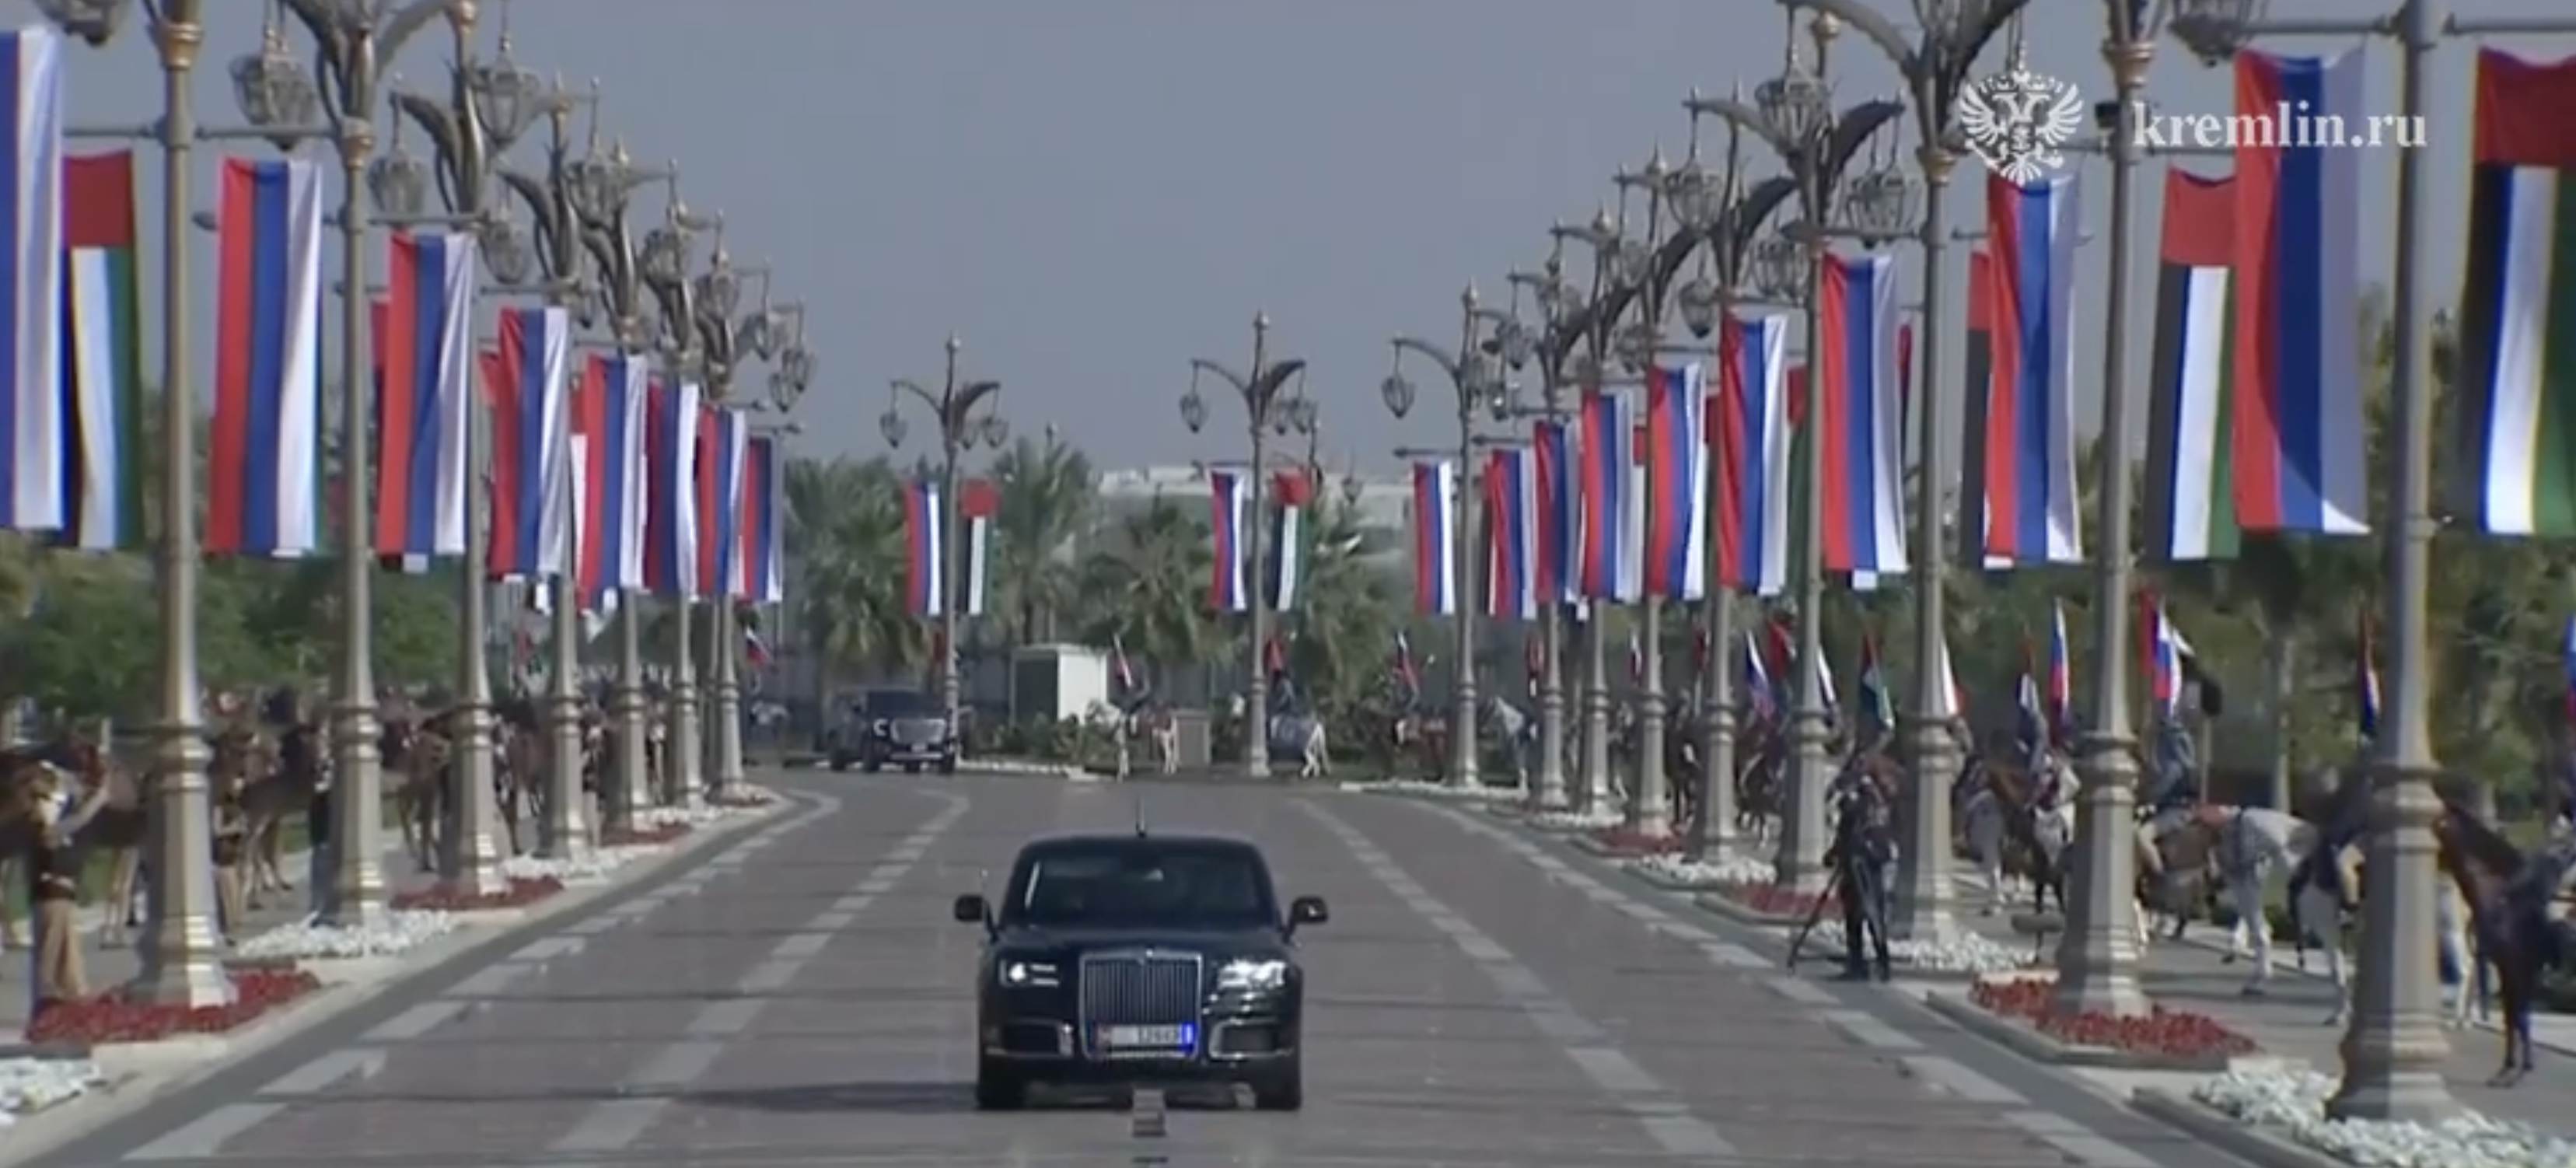 La limusina de Putin, valorada en un millón de libras, recorriendo las calles de Abu Dabi llenas de banderas rusas, camellos y caballos.